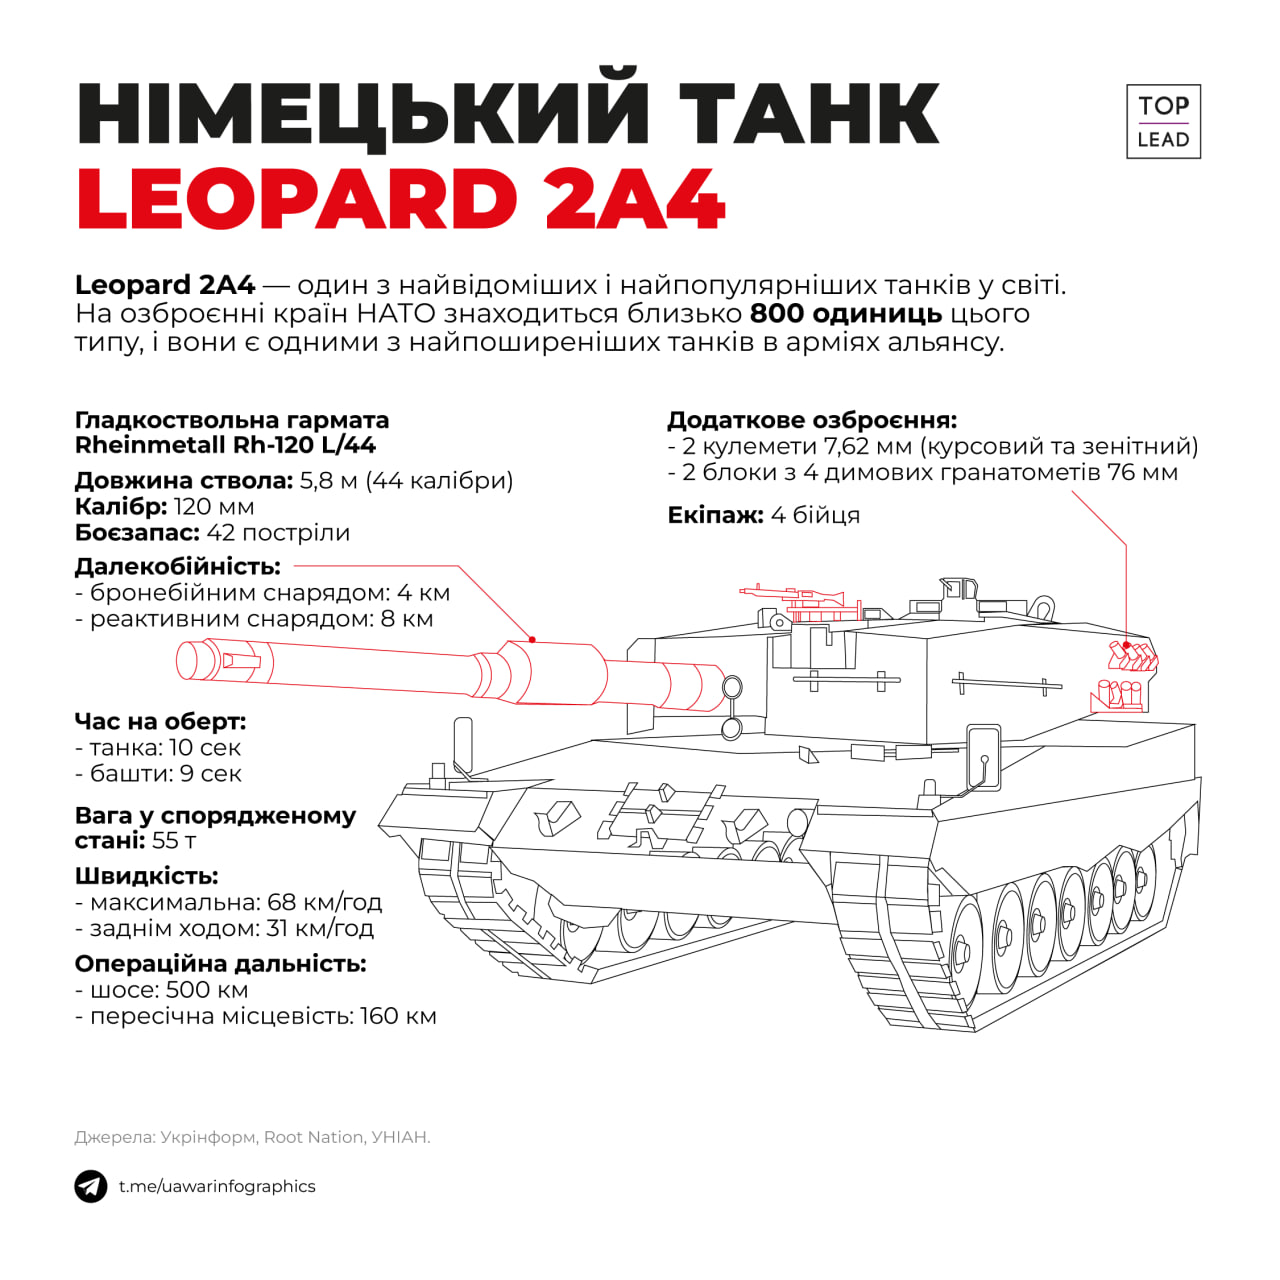 Leopard, Abrams - танки для України (ІНФОГРАФІКА)